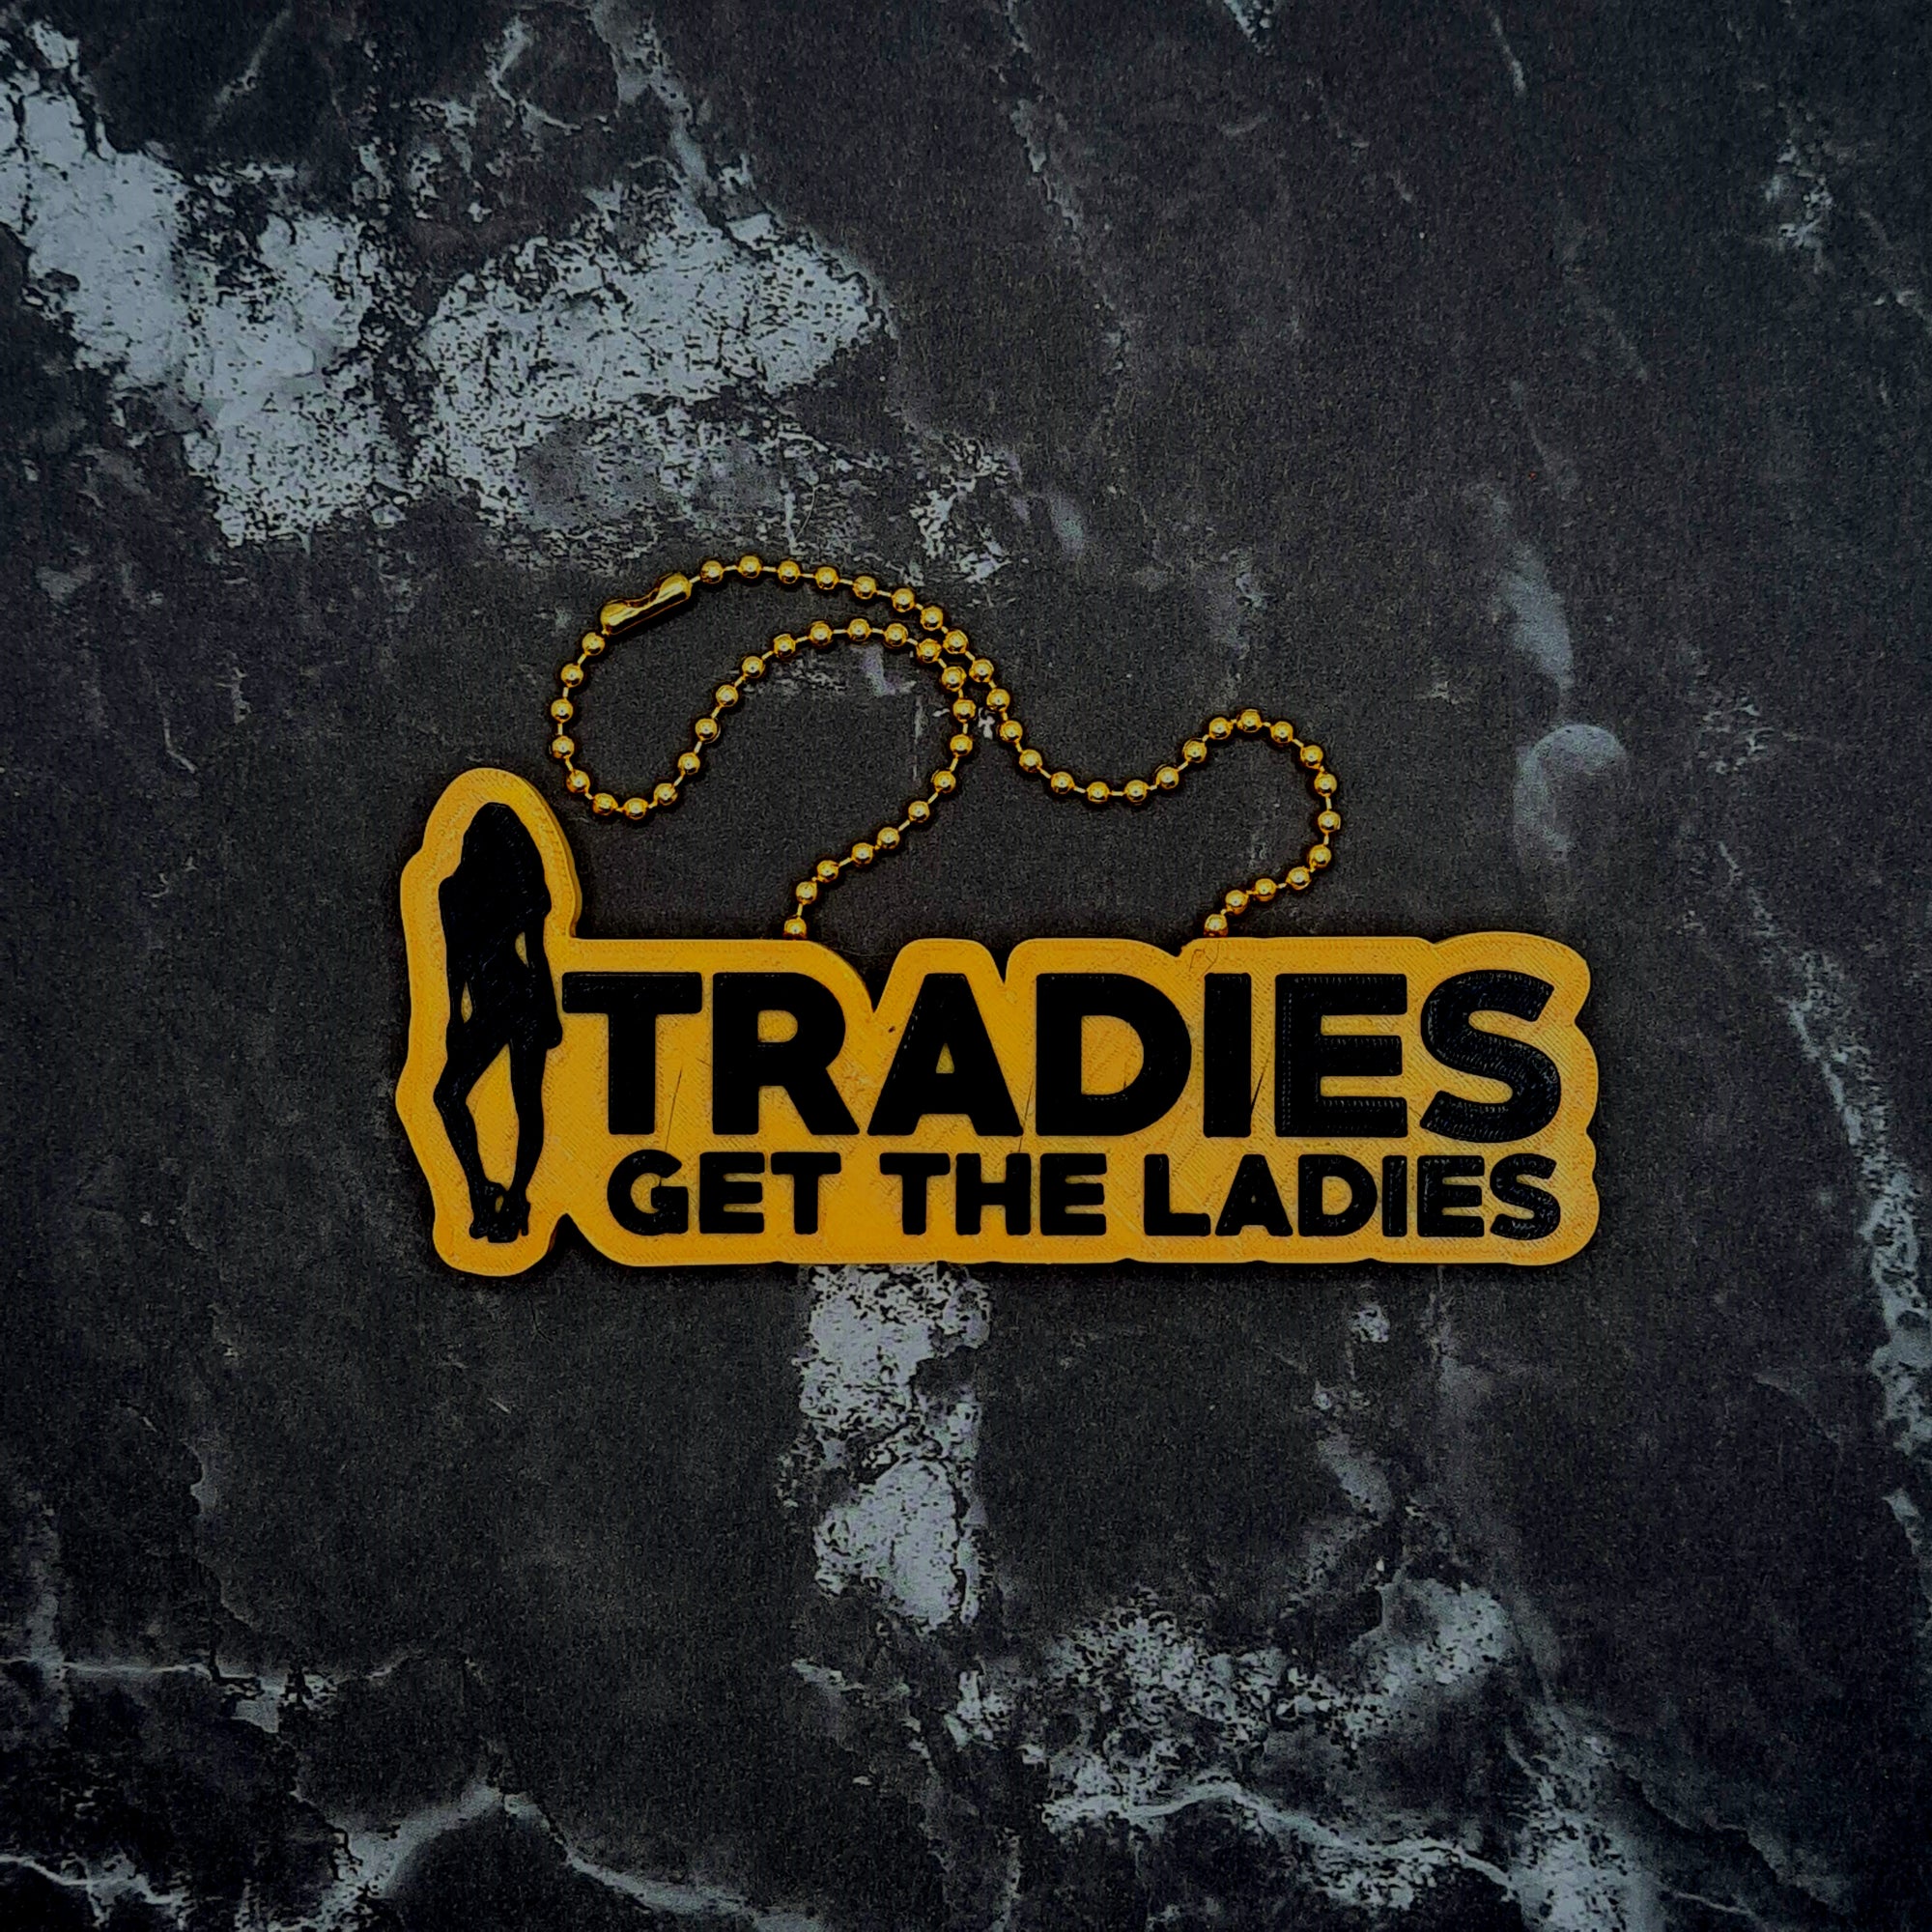 Tradies Get the Ladies Charm!